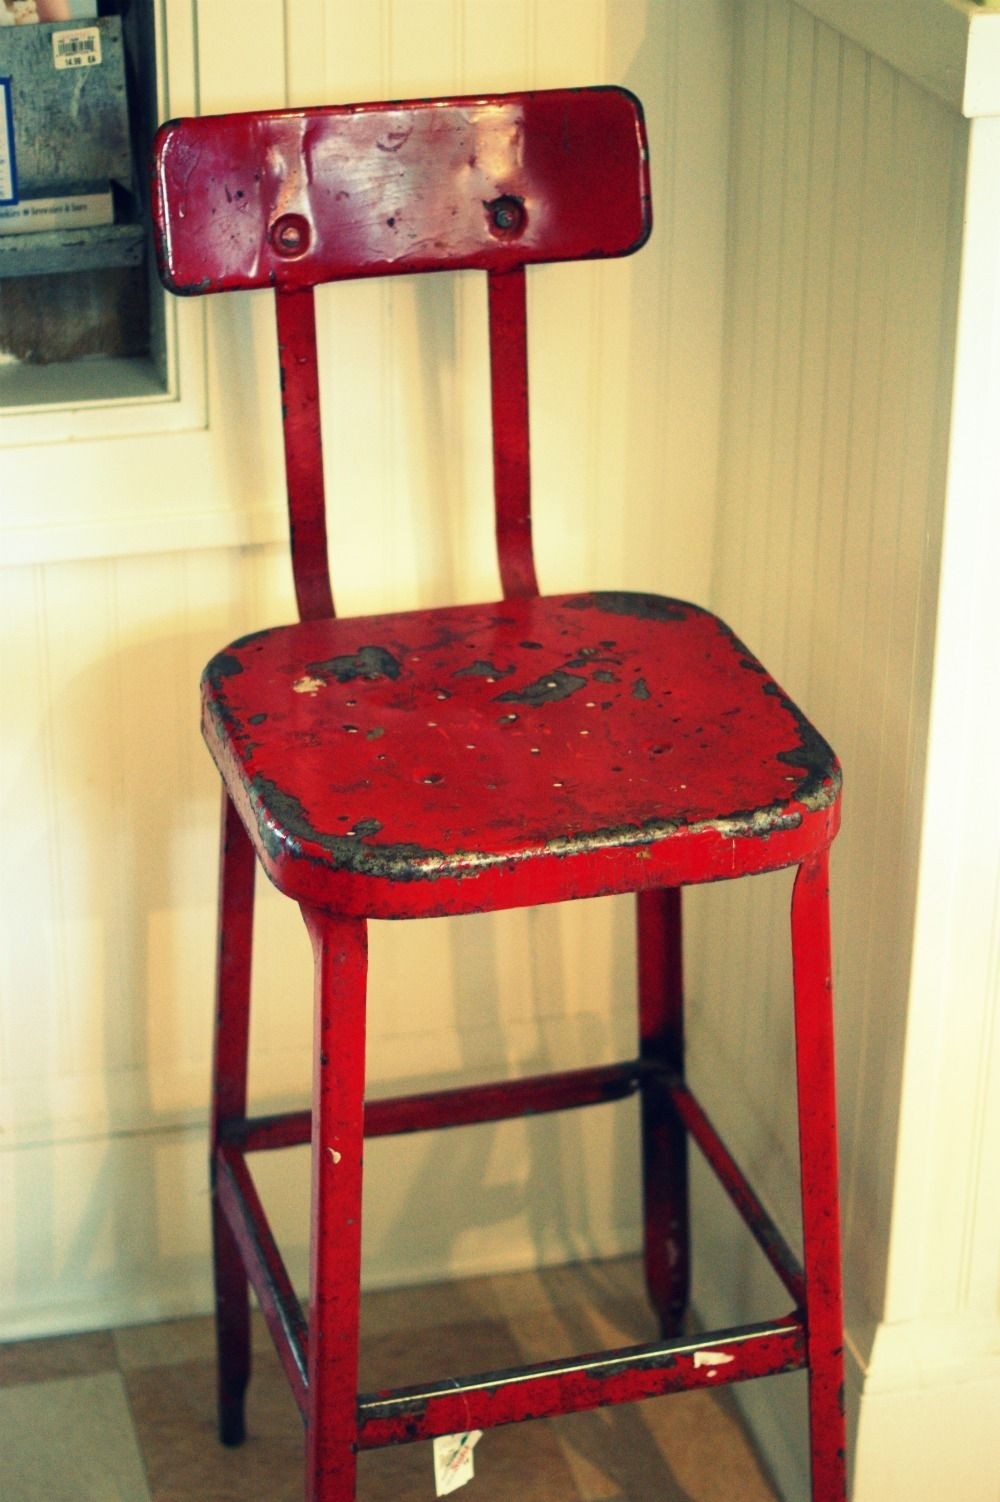 Vintage metal stools